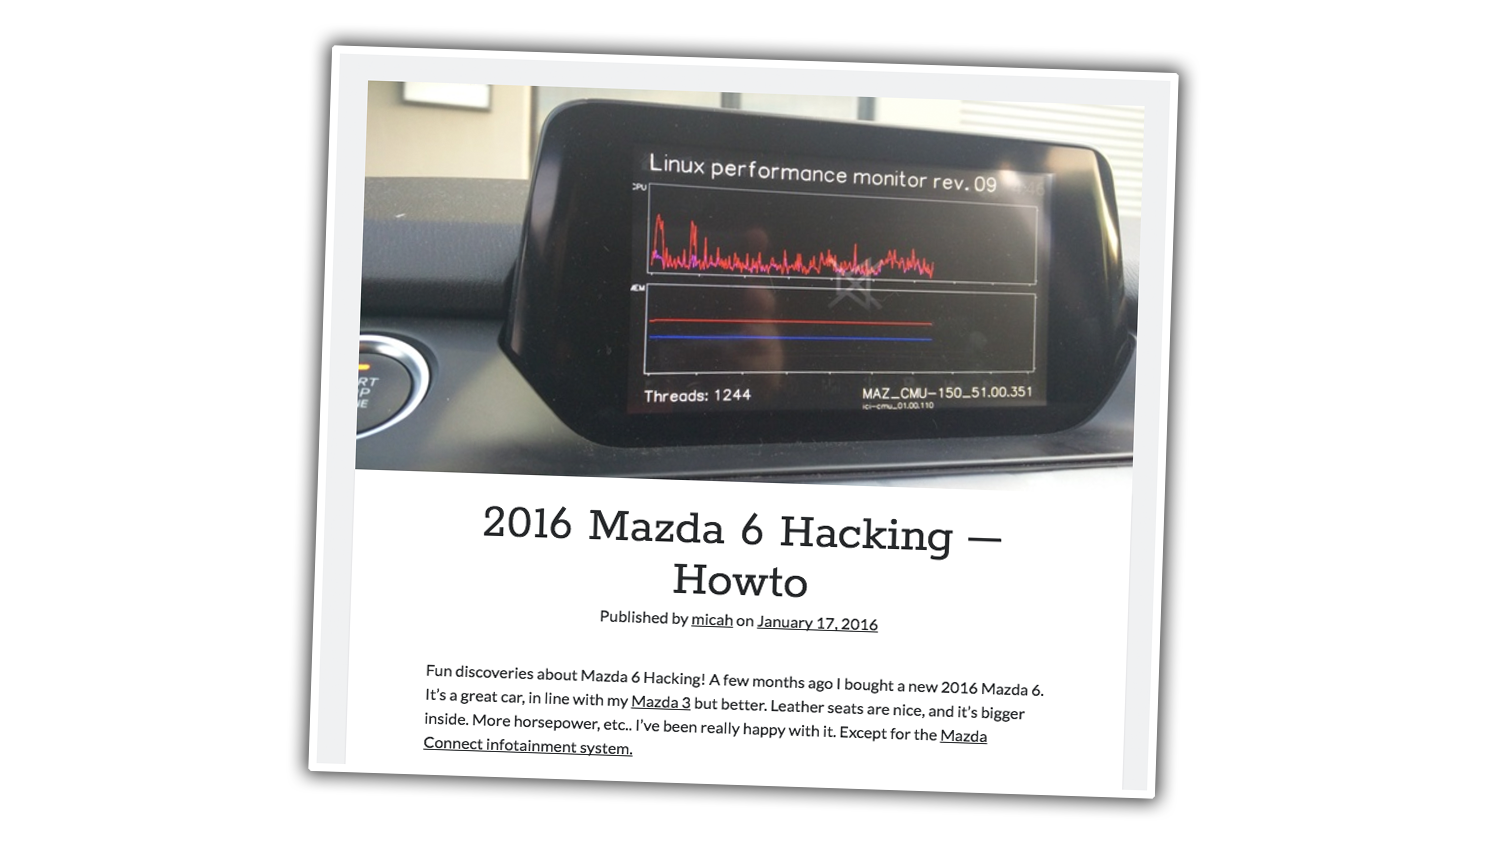 Hi-Tech, peretasan sistem MZD Connect mazda 6: Ditemukan Cara Untuk Meretas Mazda Pakai USB, Mau Coba?